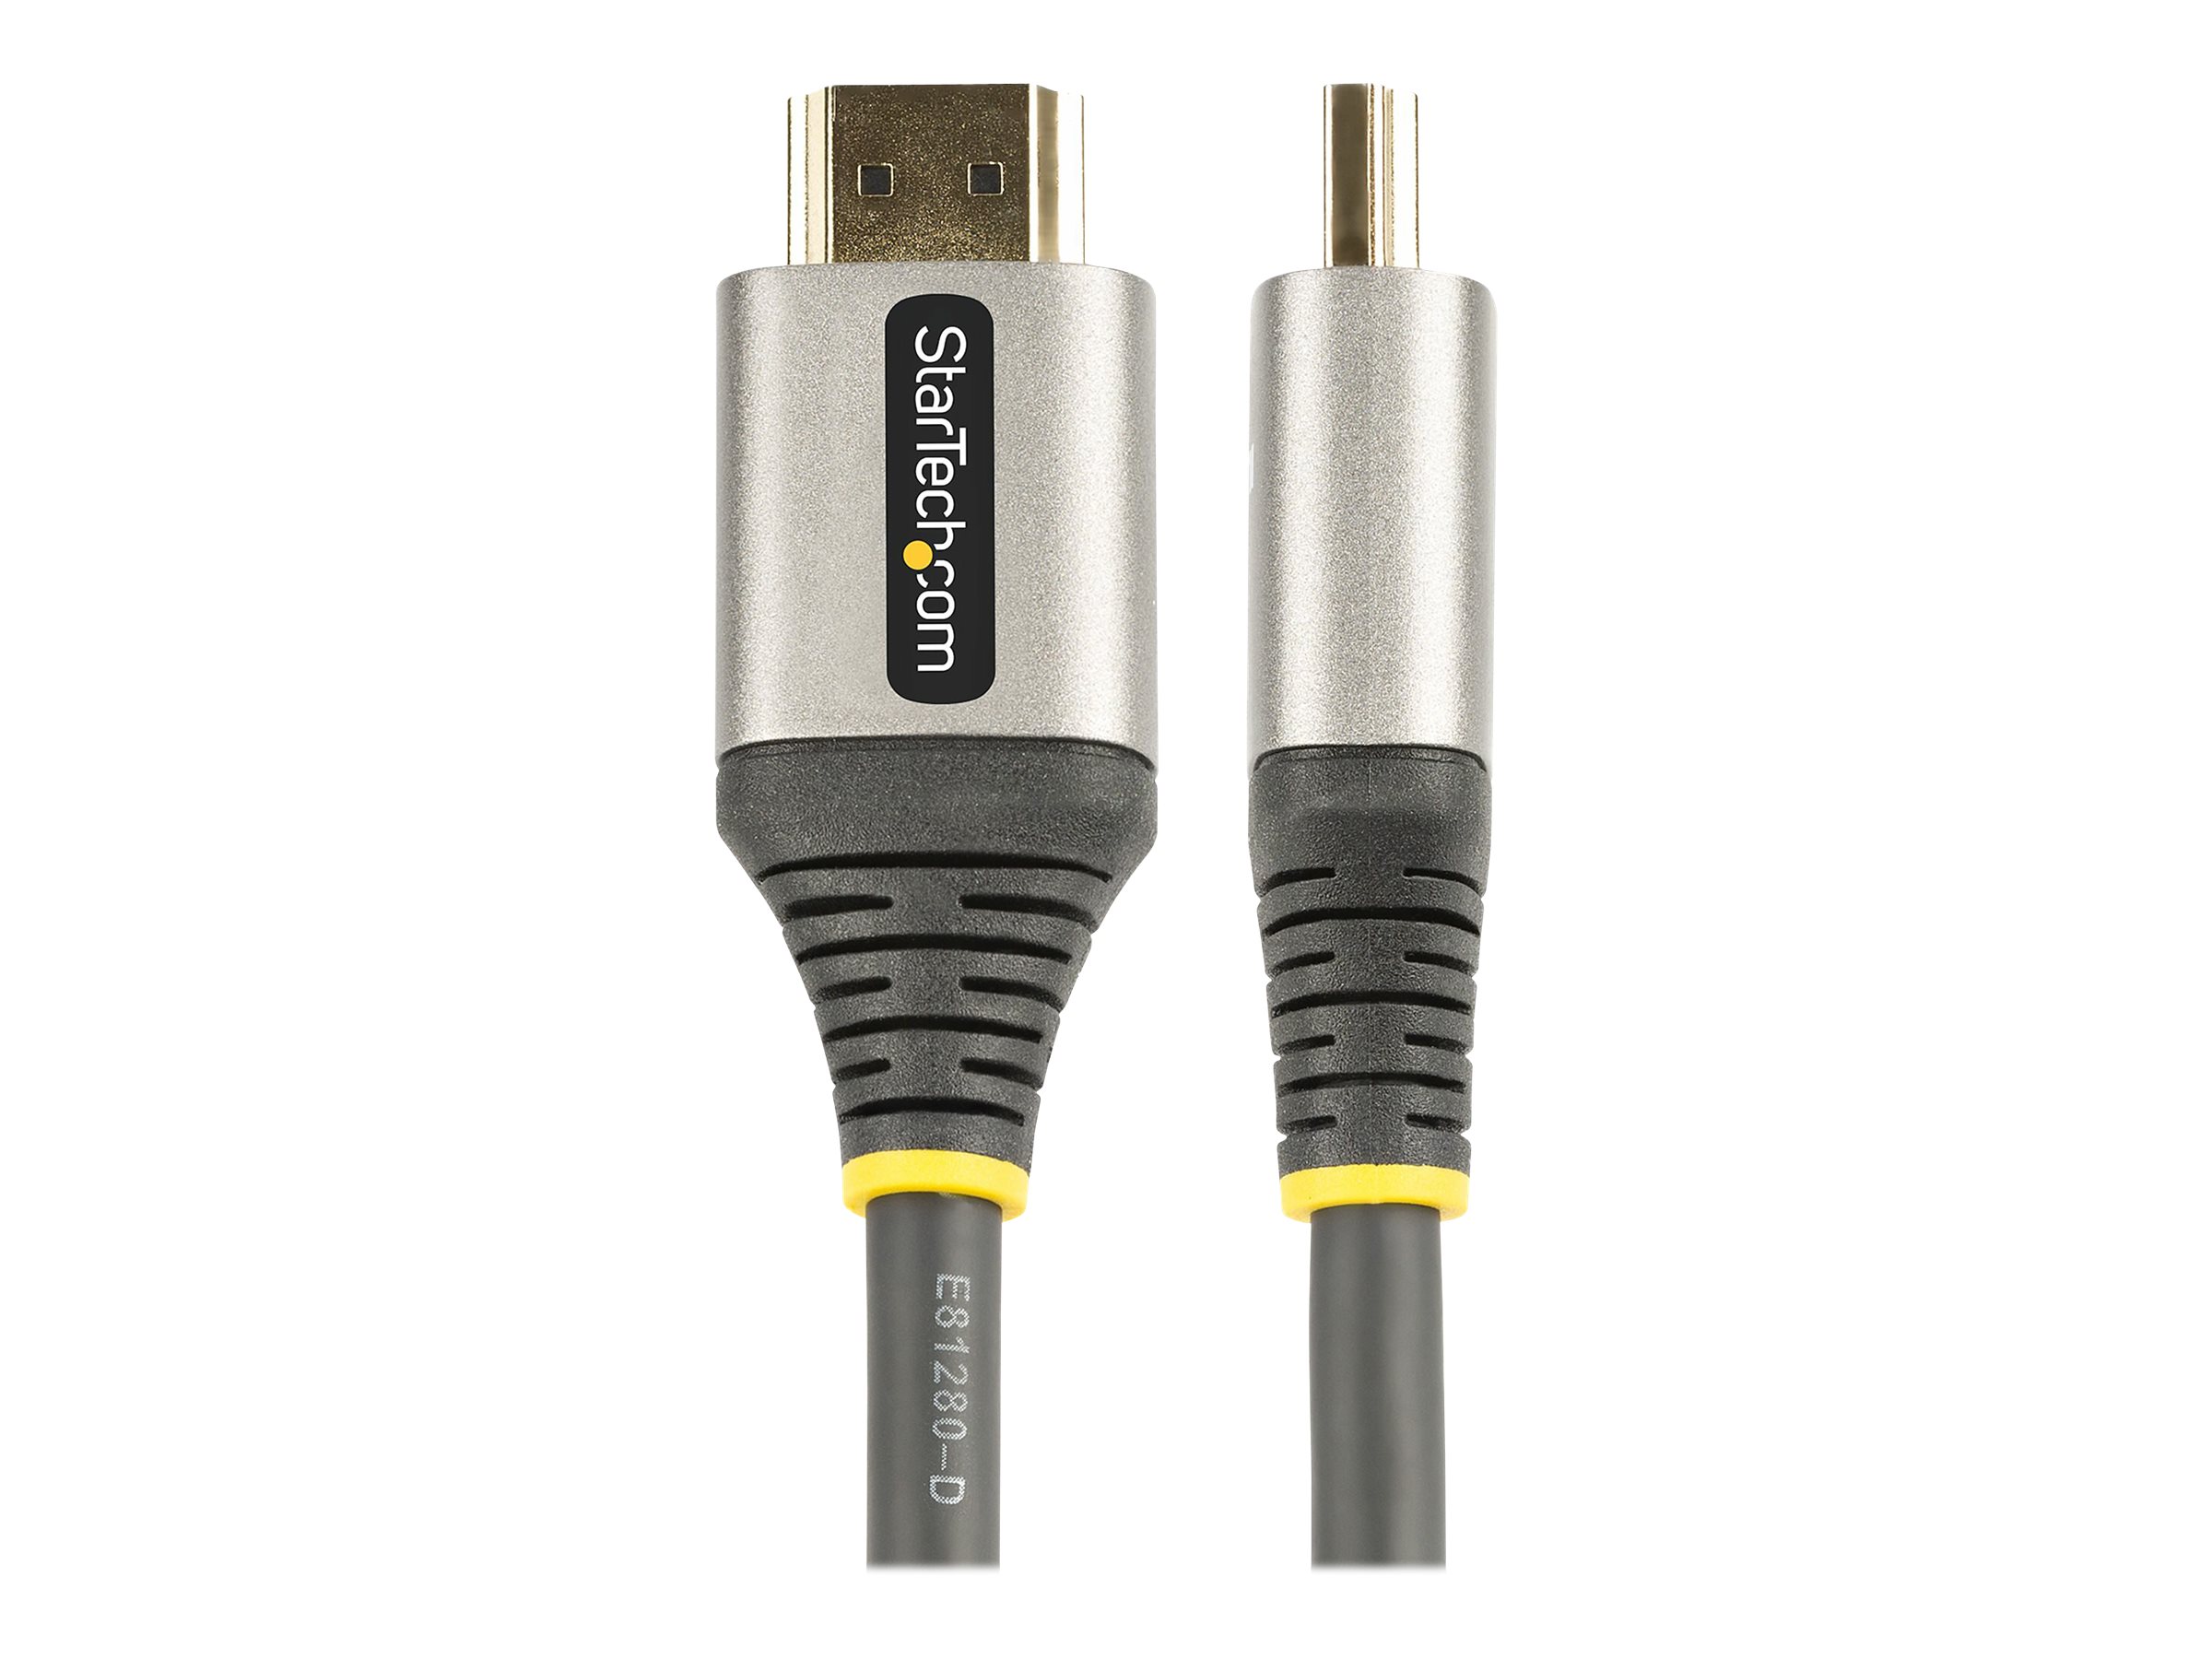 StarTech.com Câble HDMI 2.0 Premium Certifié 2m - Câble Écran HDMI High Speed Ultra HD 4K 60Hz avec Ethernet - HDR10, ARC - Cordon Moniteur Vidéo UHD - Câble HDMI pour PC/TV - M/M (HDMMV2M) - Premium High speed - câble HDMI avec Ethernet - HDMI mâle pour HDMI mâle - 2 m - blindé - gris, noir - passif, support pour 4K60Hz (3840 x 2160) - HDMMV2M - Accessoires pour systèmes audio domestiques